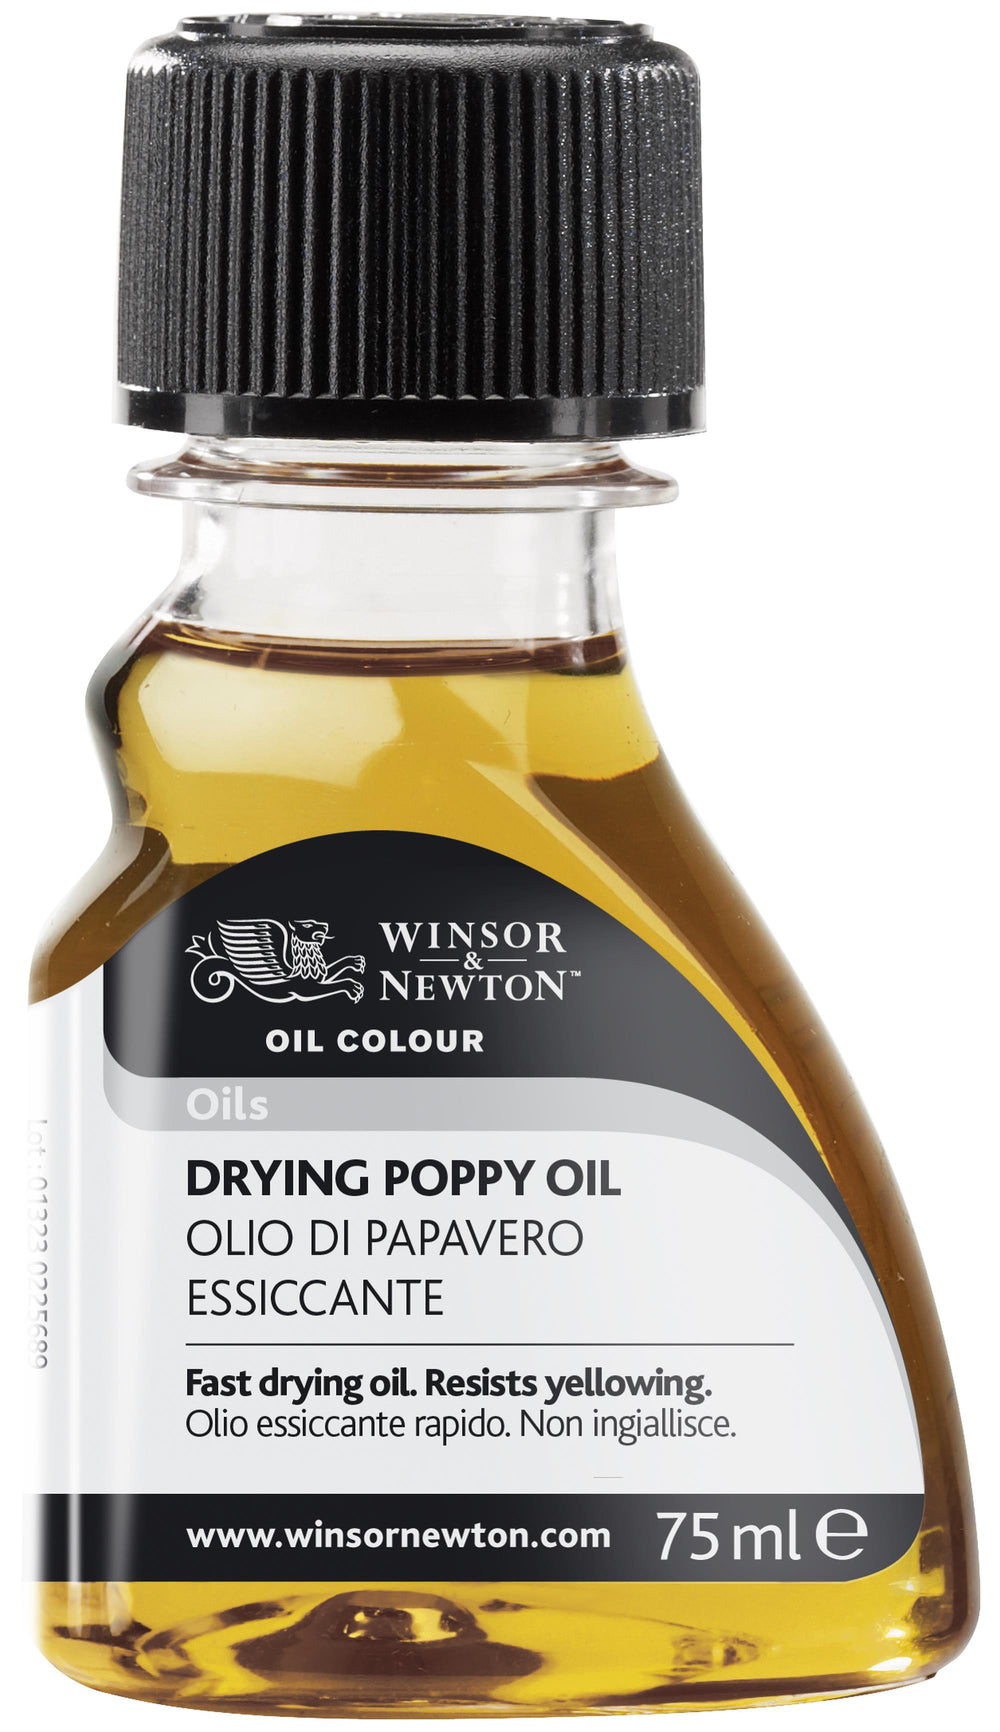 Winsor & Newton Drying Poppy Oil - 75ml